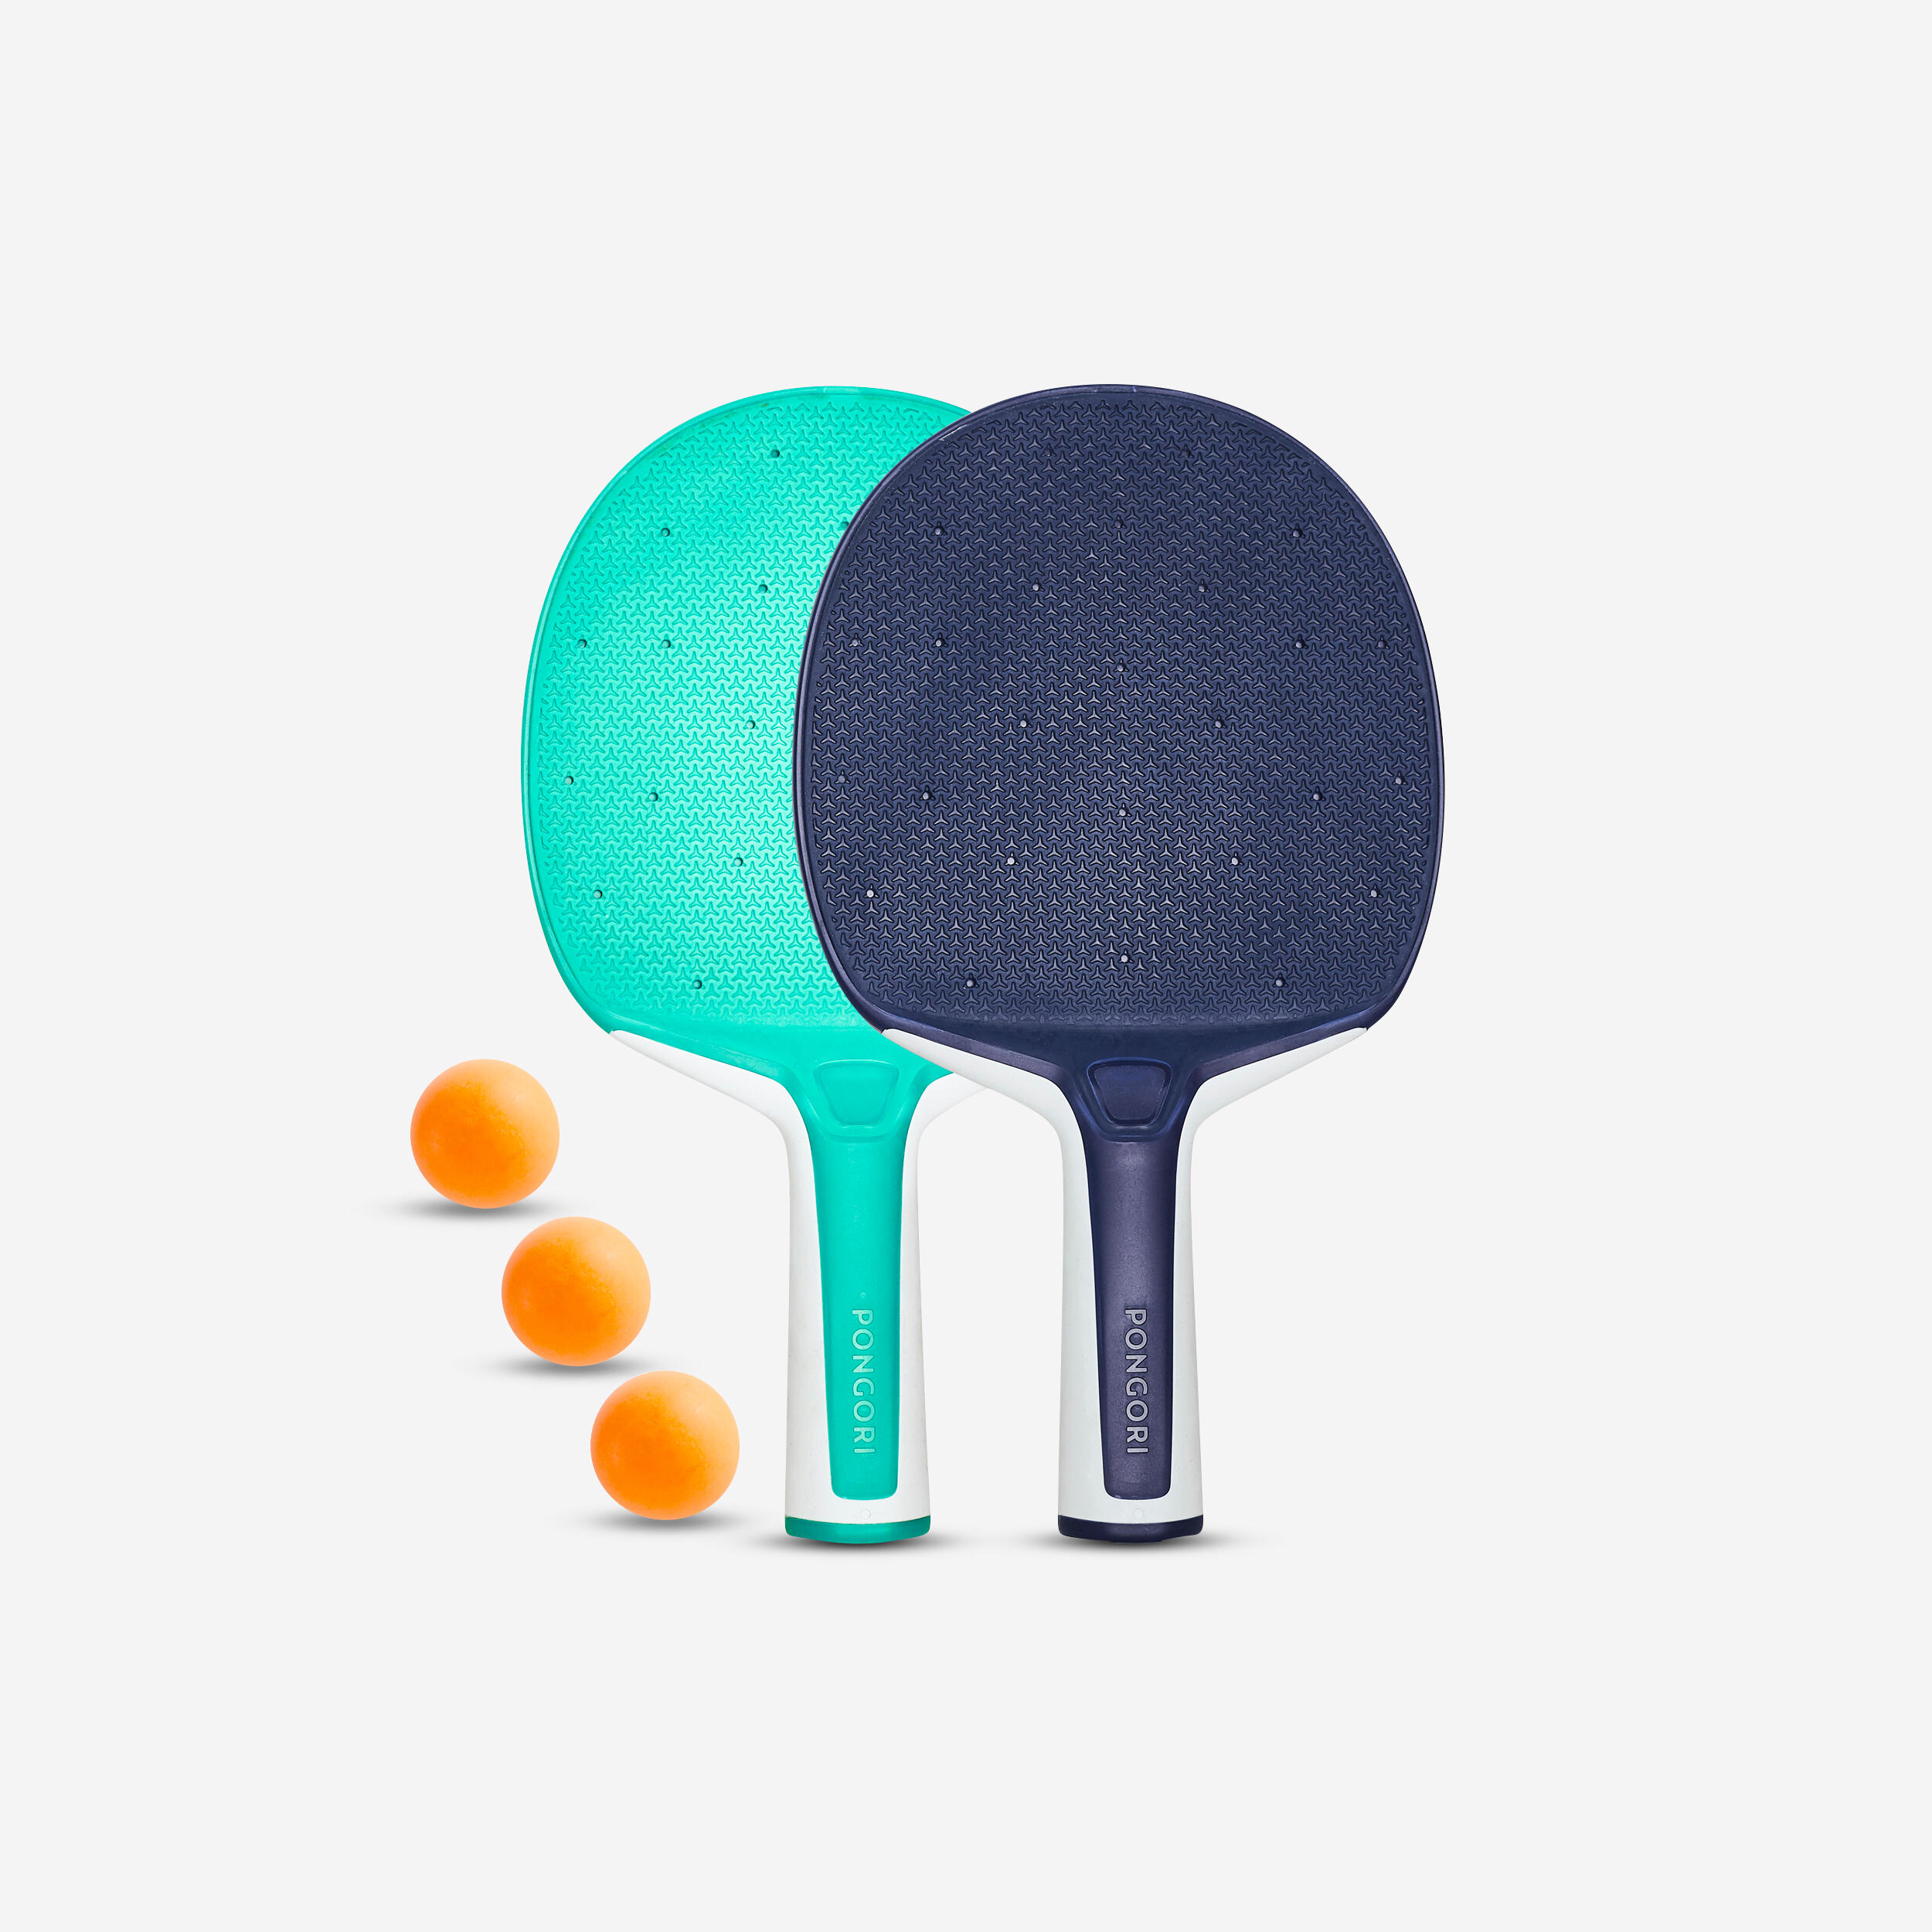 Y-H Housse de protection pour raquette de tennis de table en nylon